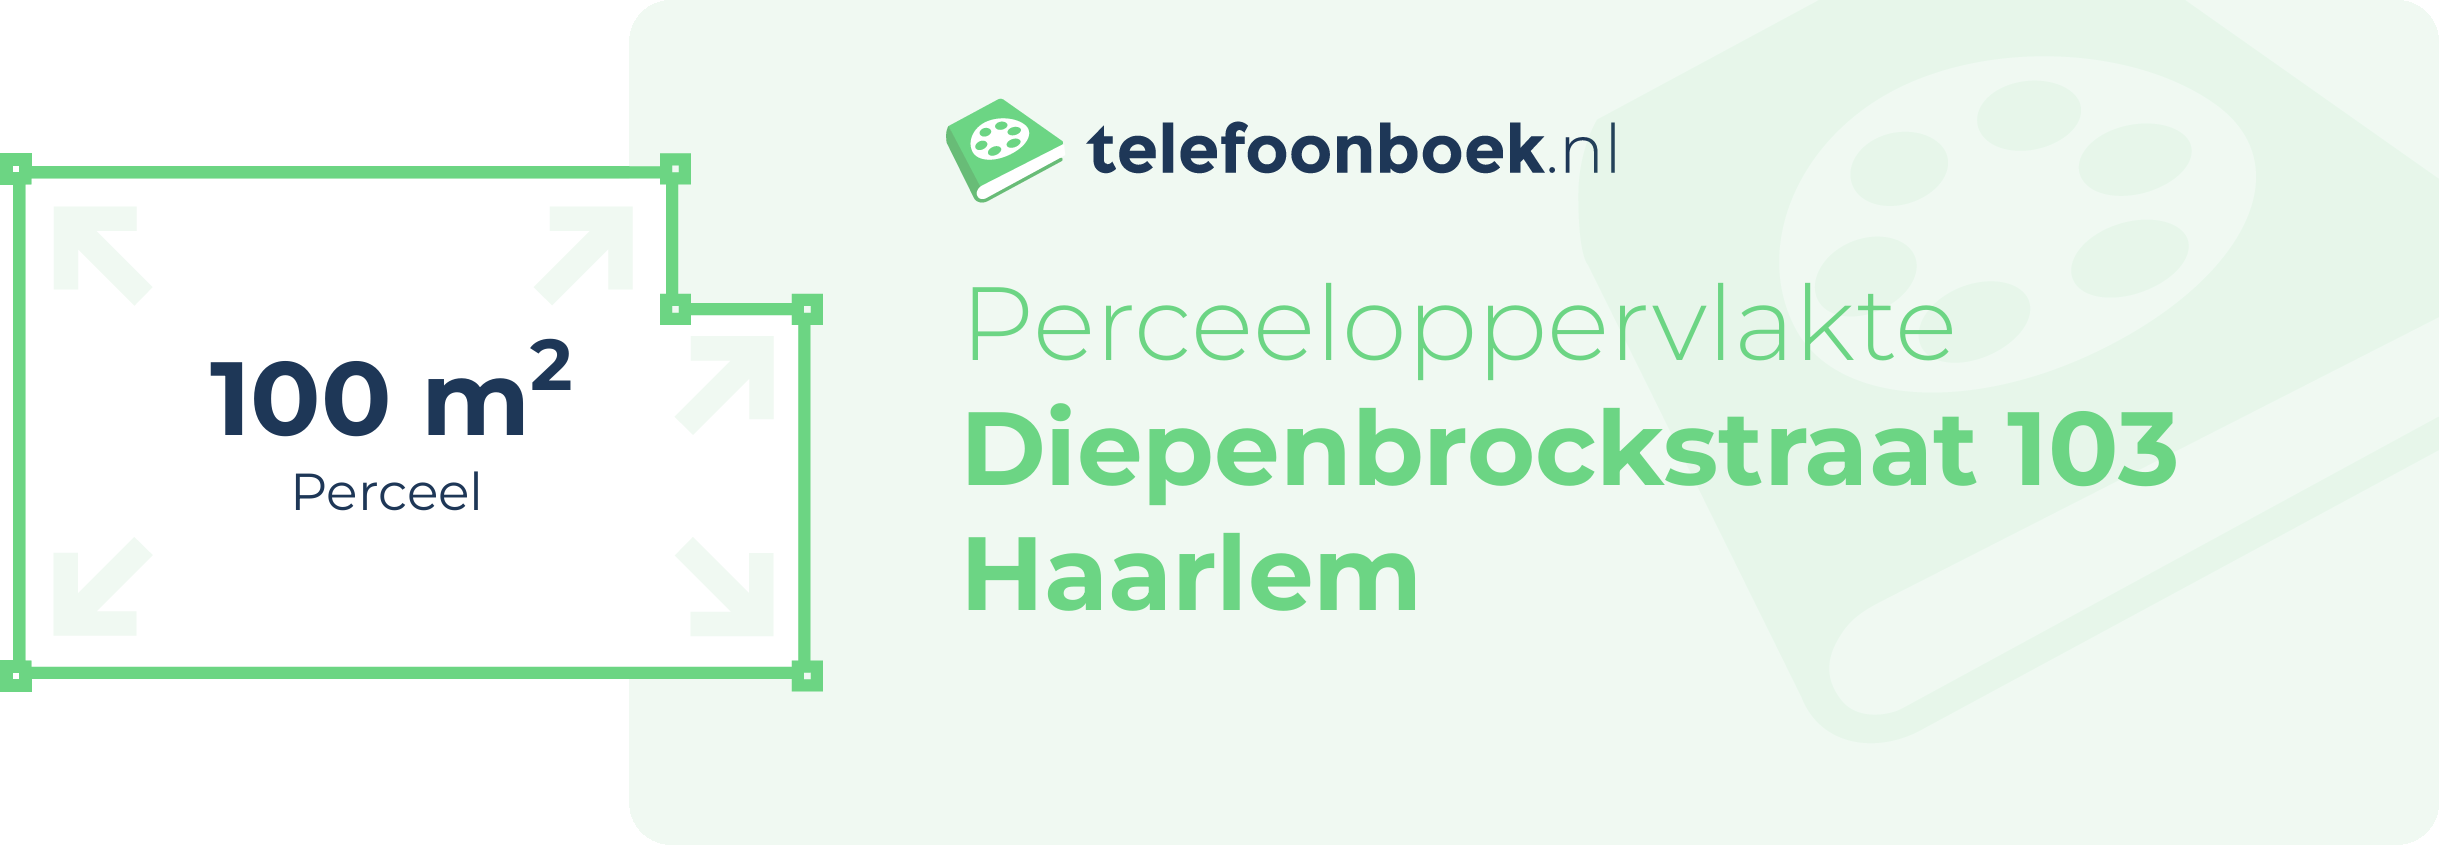 Perceeloppervlakte Diepenbrockstraat 103 Haarlem